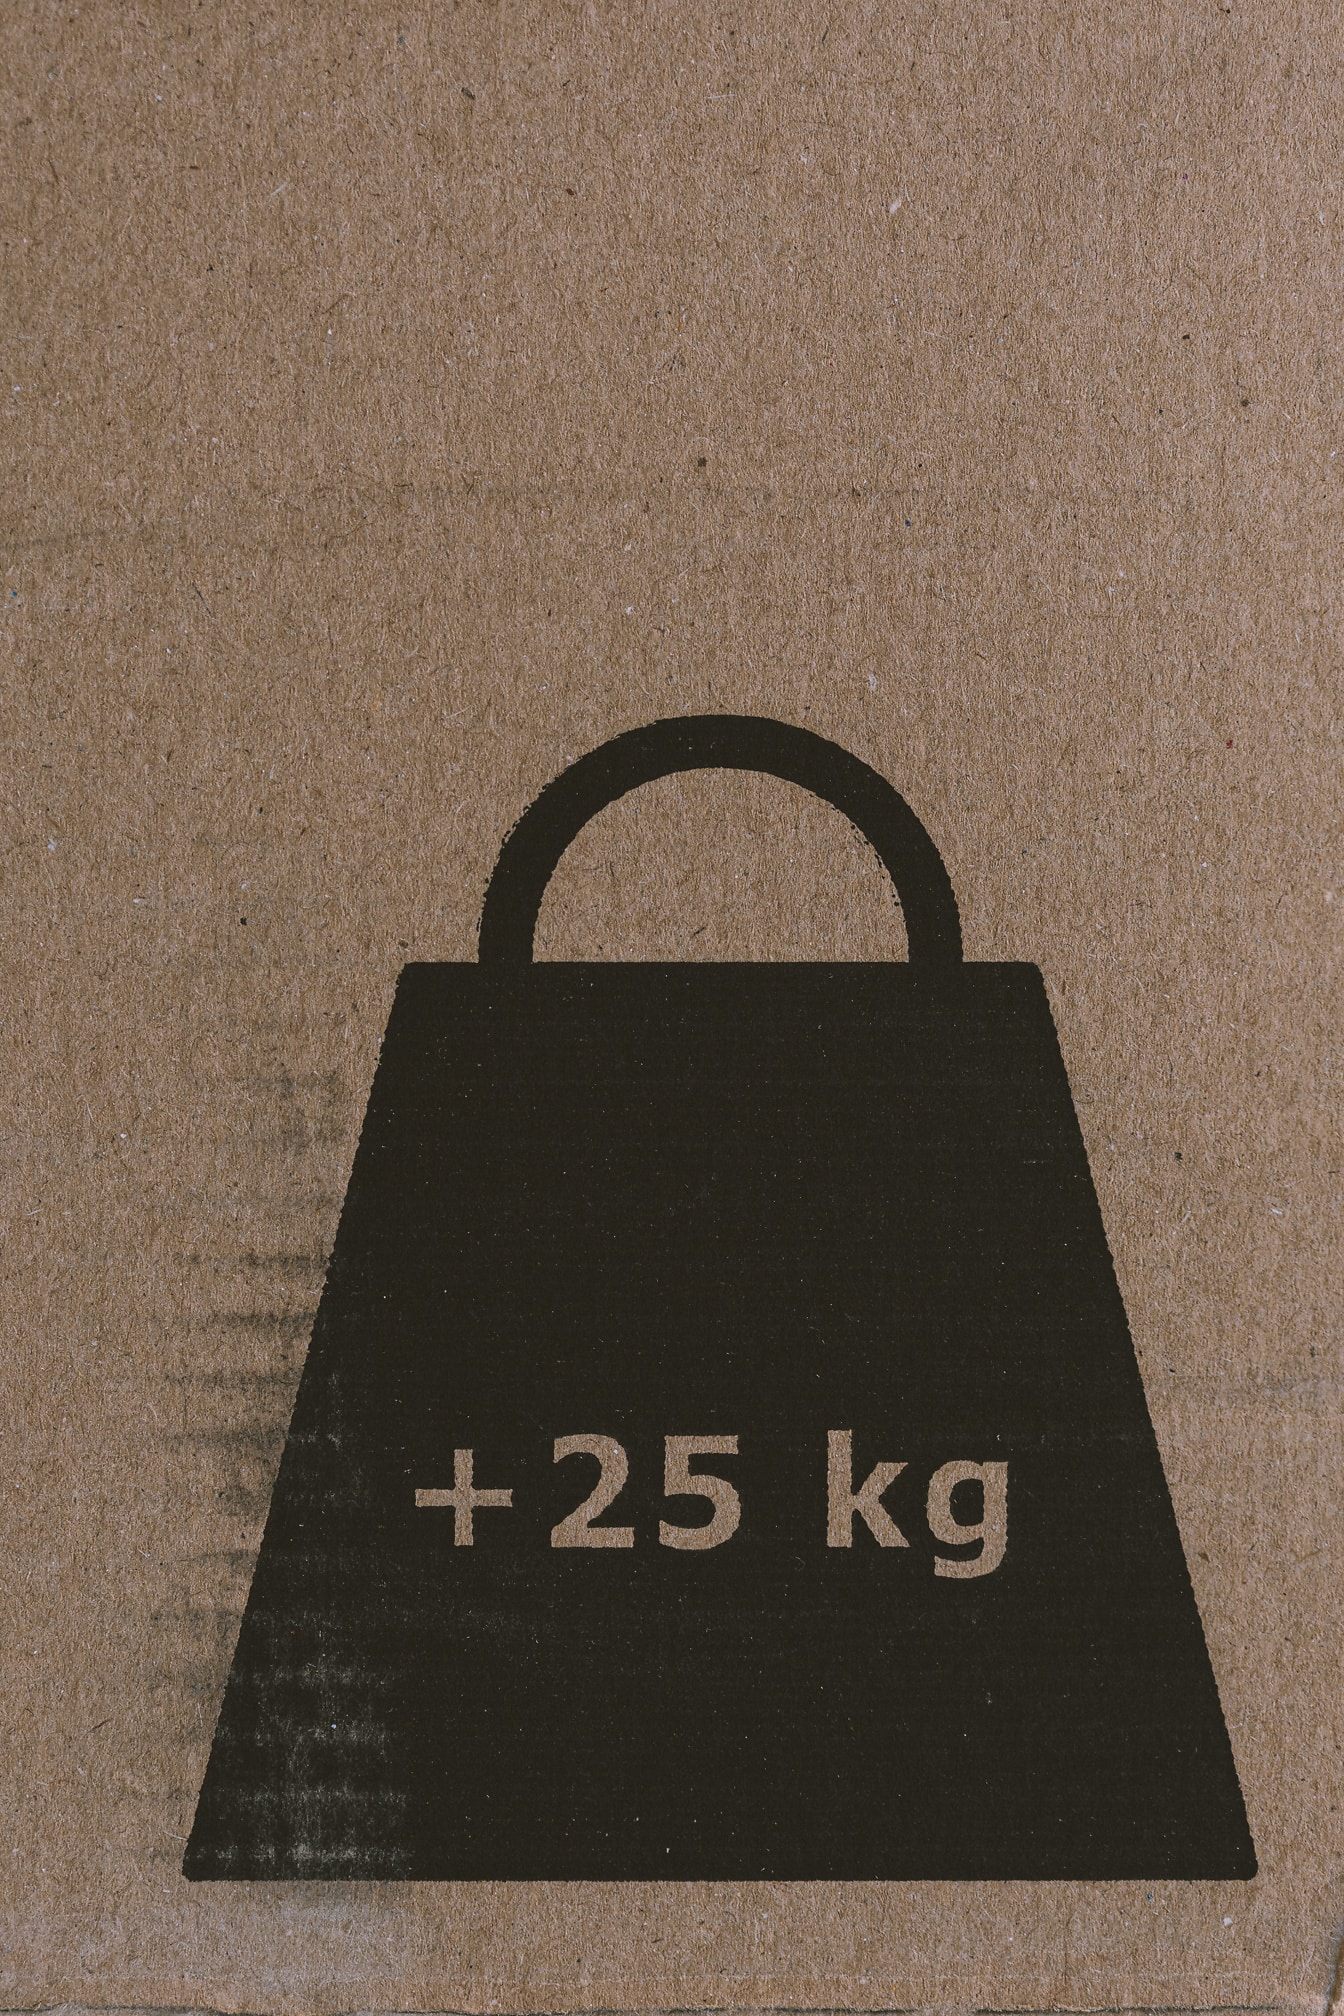 Σημάδι βάρους χιλιογράμμων (25 kg) σε καφέ χαρτόνι